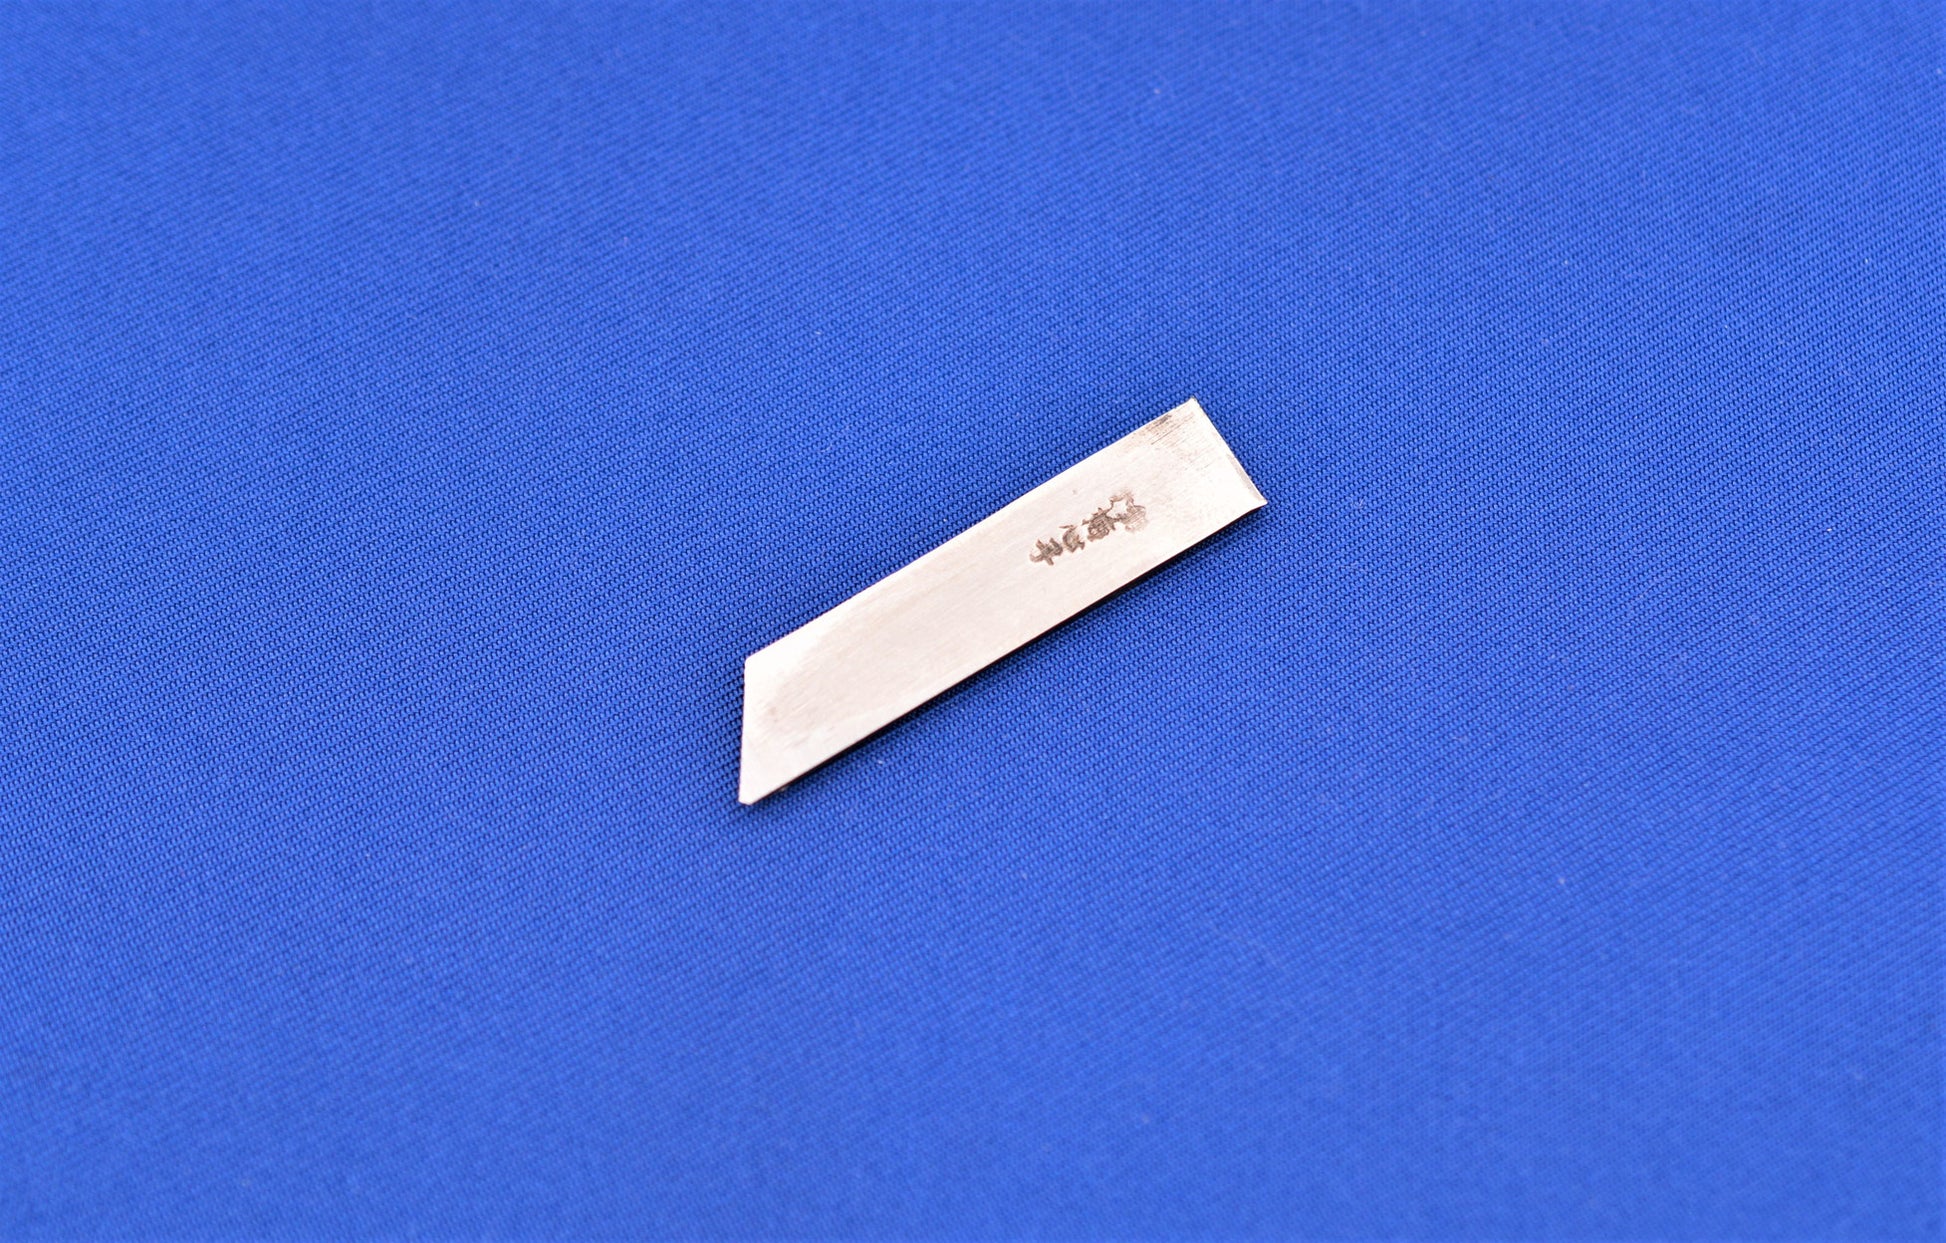 Baishinshi Marking Gauge Blade 9mm for Left-handed